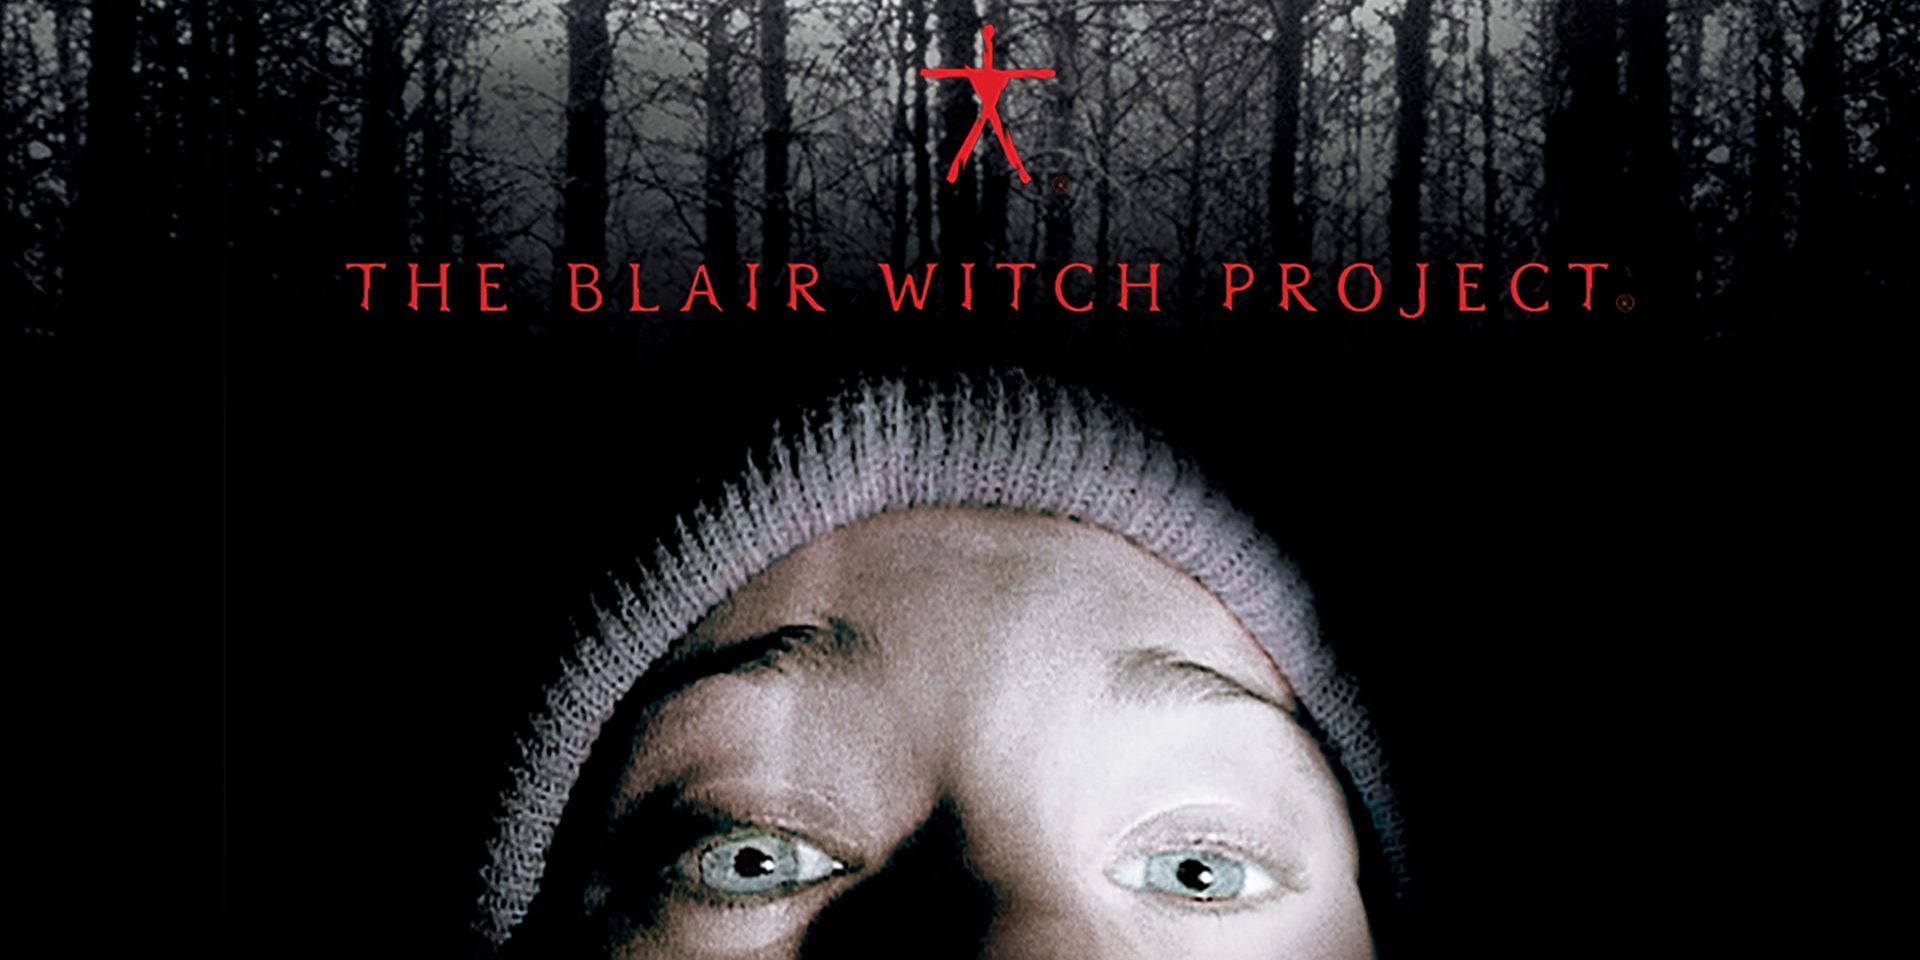 Encabezado del proyecto La bruja de Blair